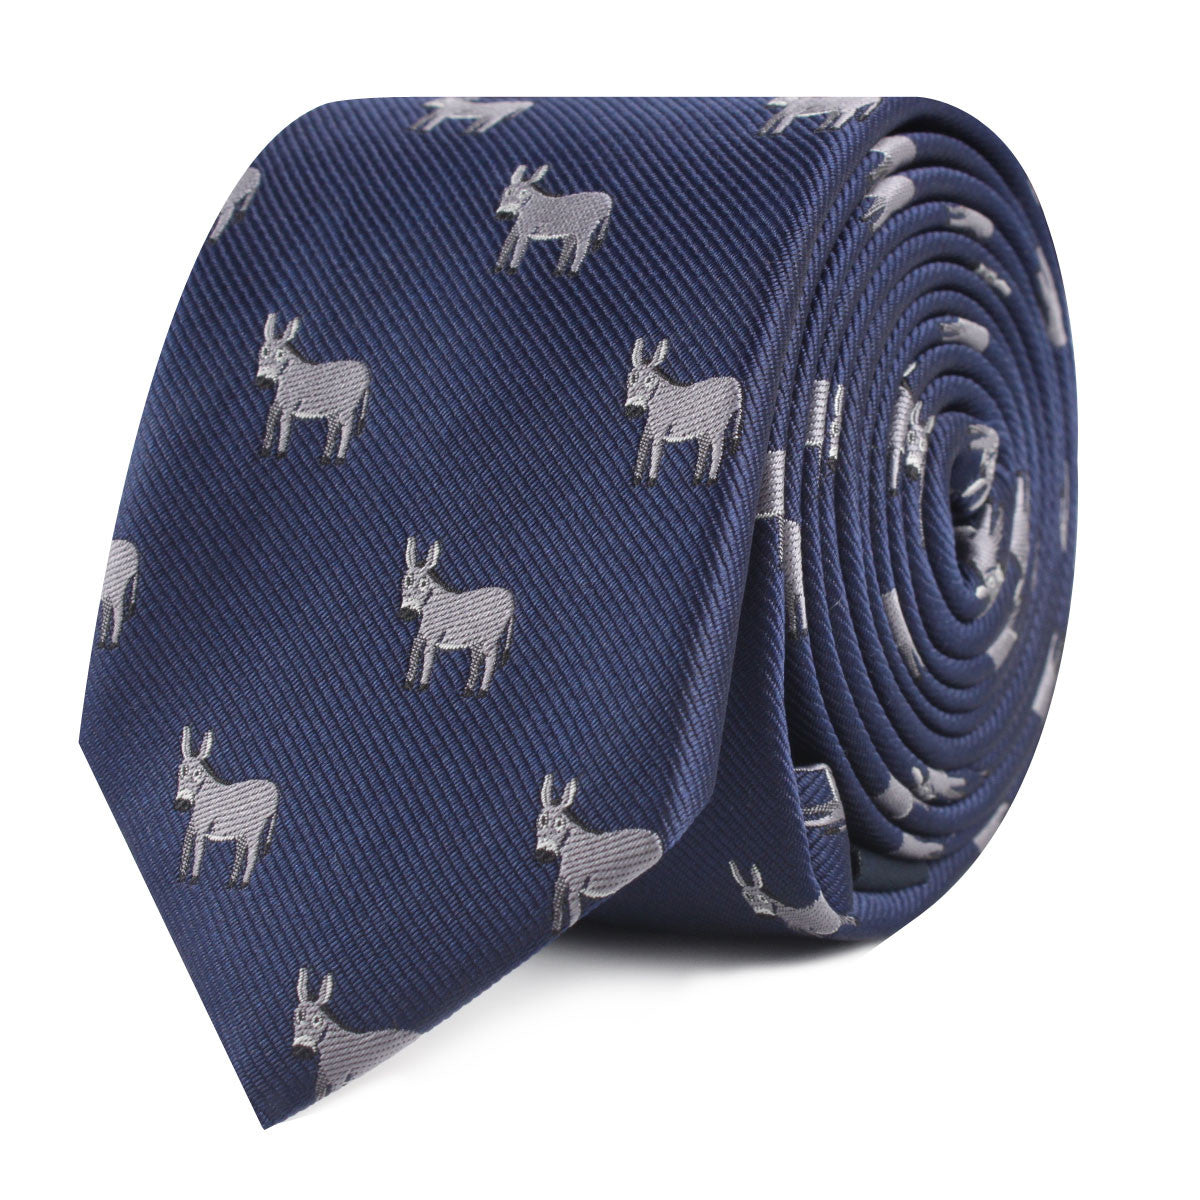 Donkey Slim Tie